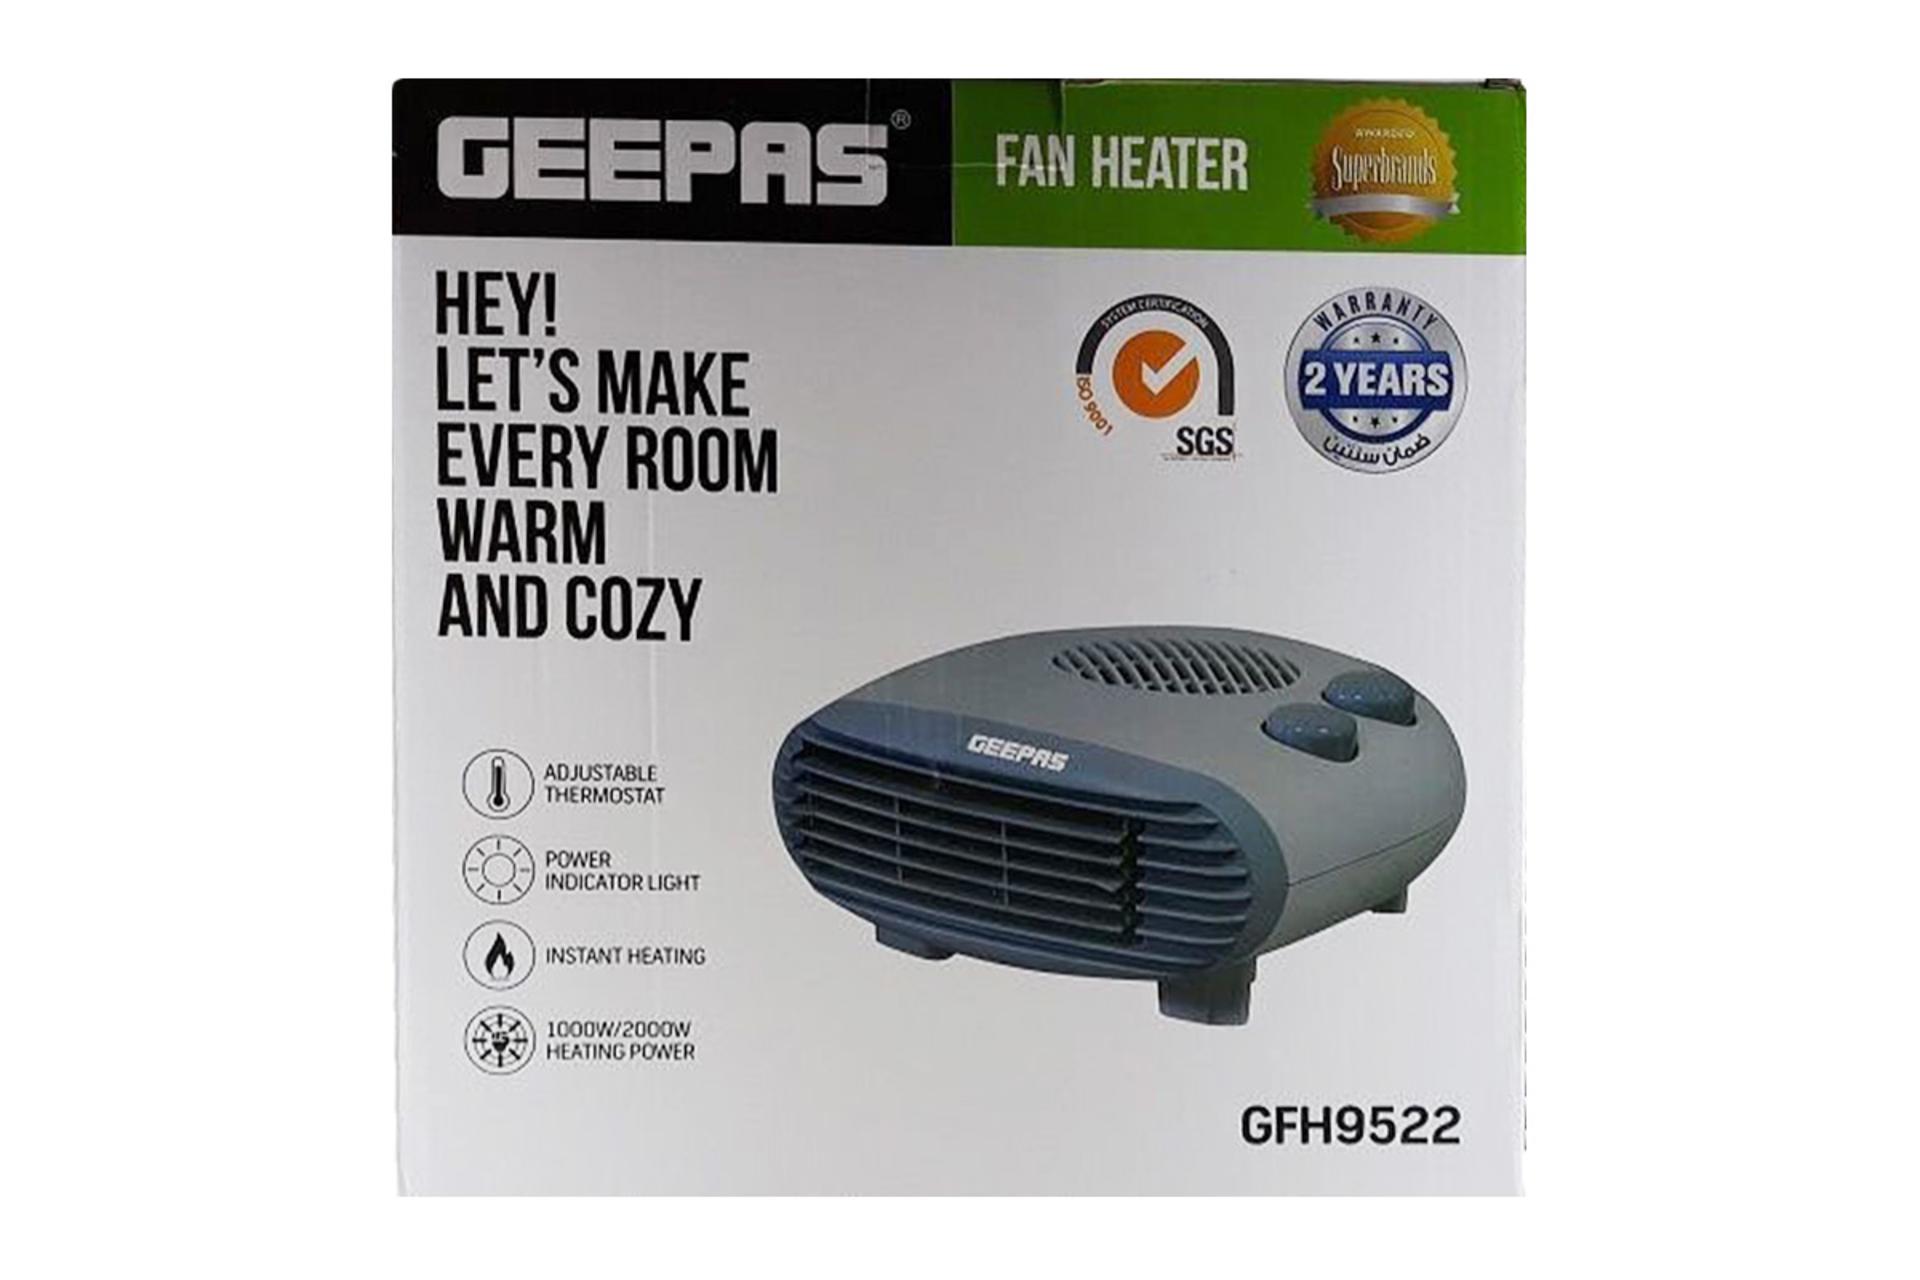 جعبه بخاری برقی جی پاس GEEPAS GFH9522